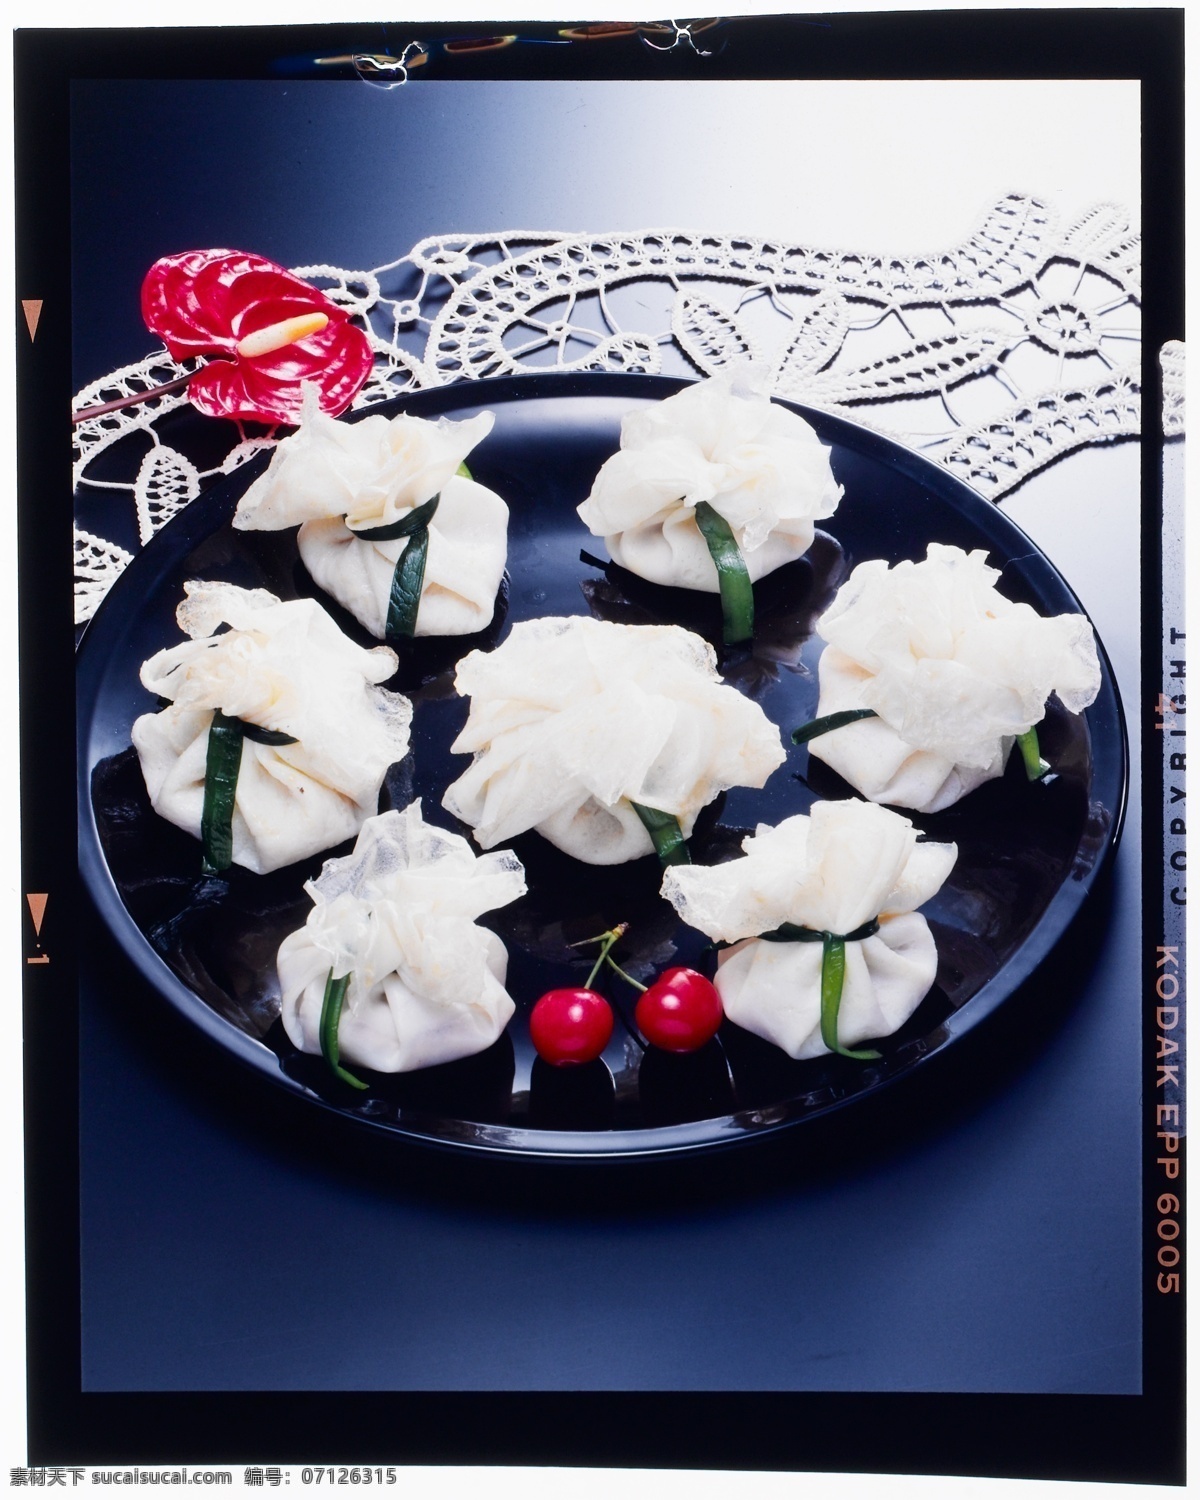 中式料理 春捲皮 韭菜 花式拼盤 黑器皿 漆器 餐饮美食 传统美食